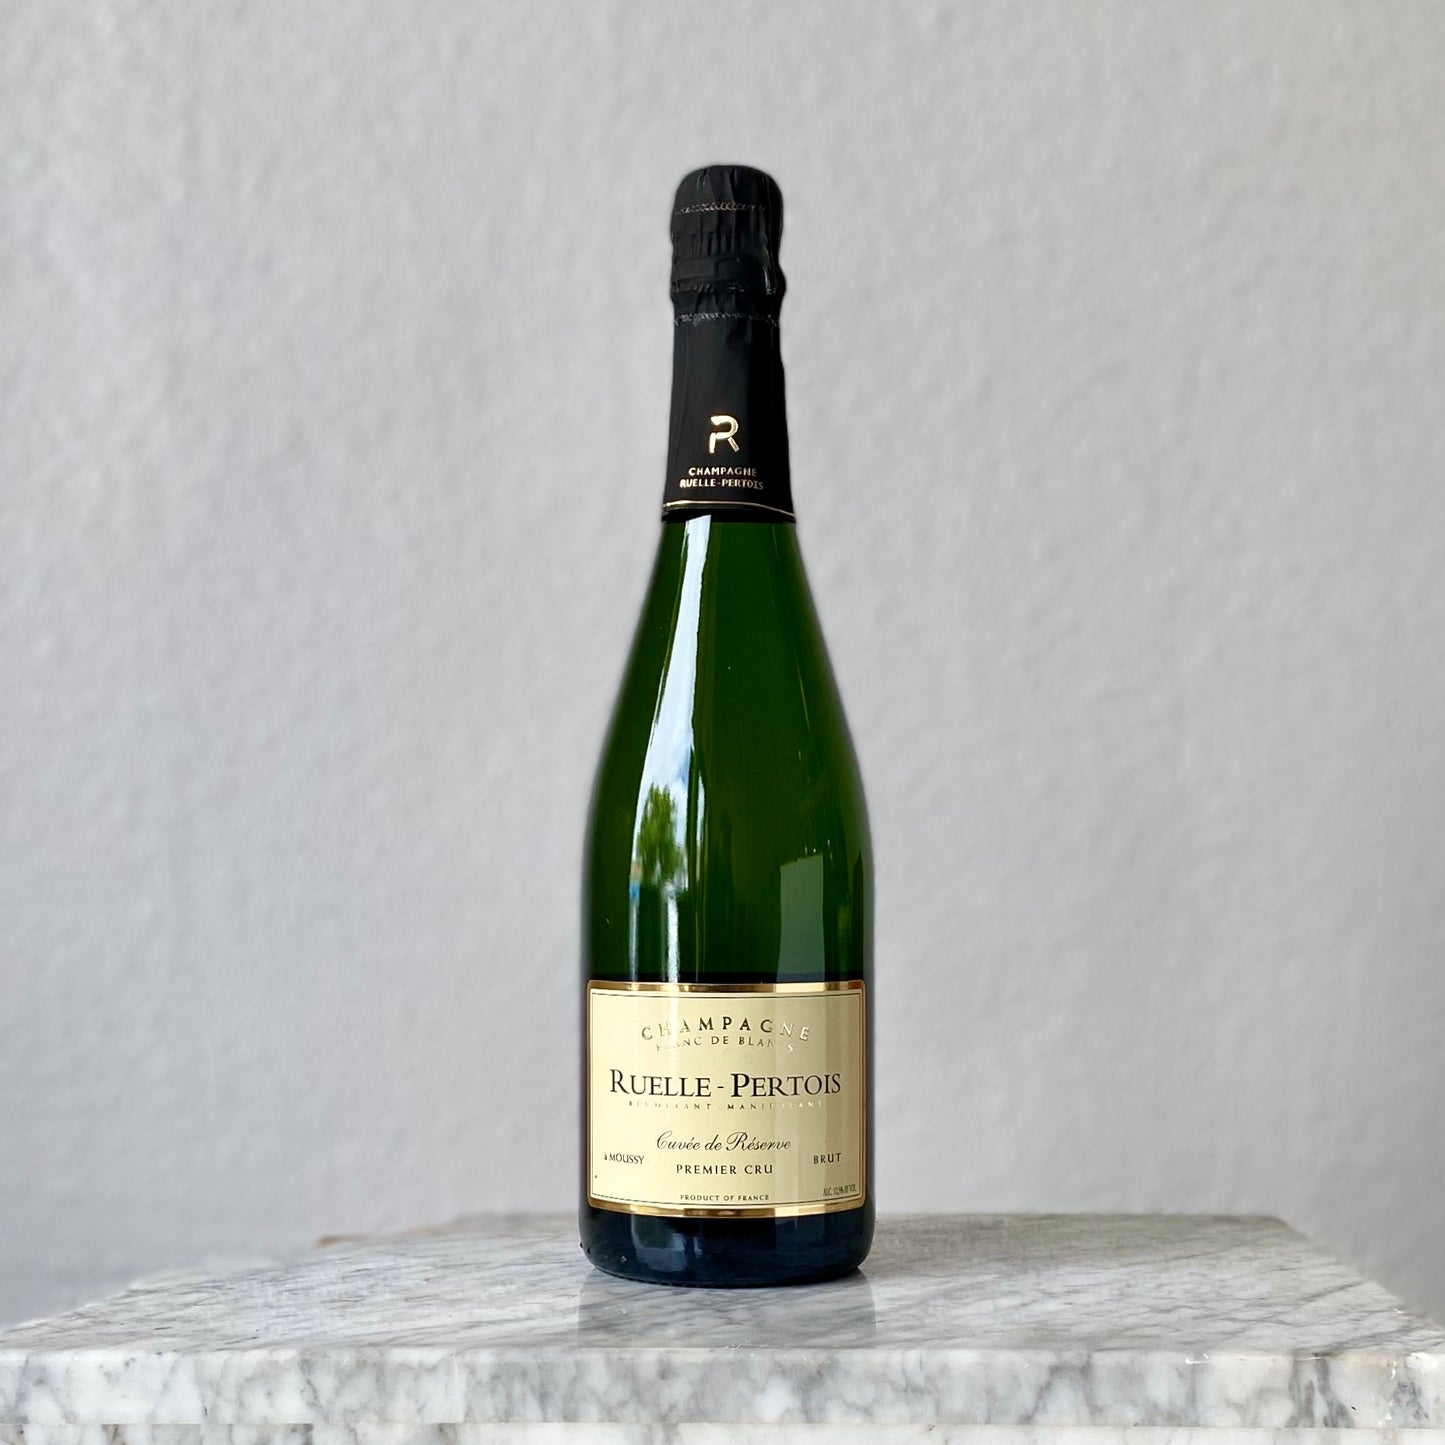 Ruelle-Pertois, Champagne Blanc de Blancs 'Cuvee de Reserve' NV